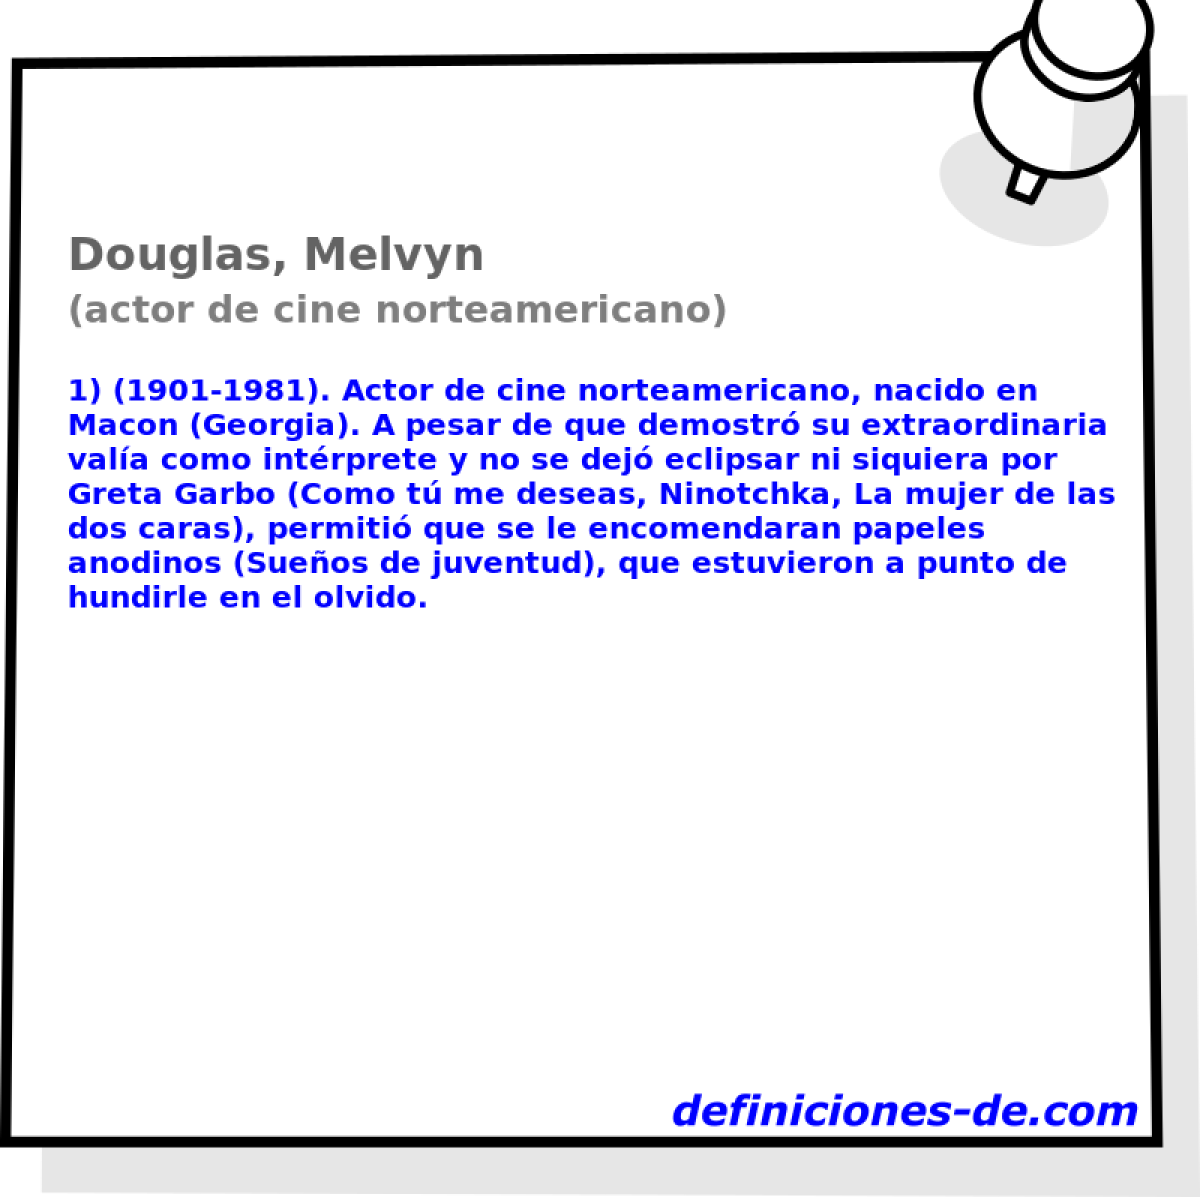 Douglas, Melvyn (actor de cine norteamericano)